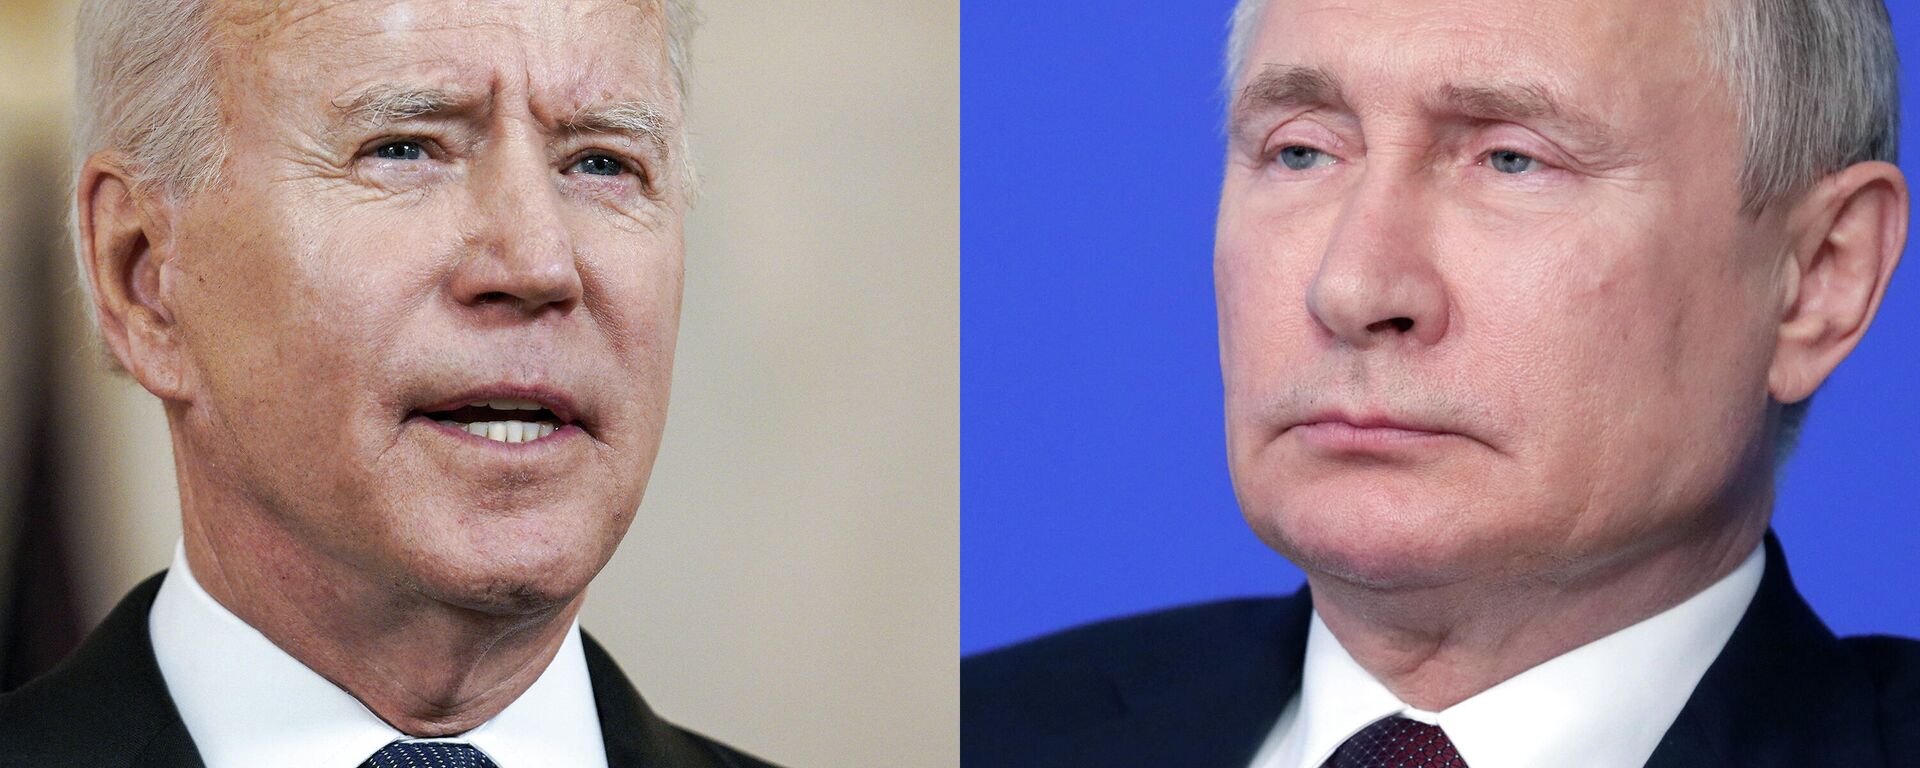 Joe Biden, presidente de EEUU, y Vladímir Putin, presidente de Rusia - Sputnik Mundo, 1920, 06.12.2021